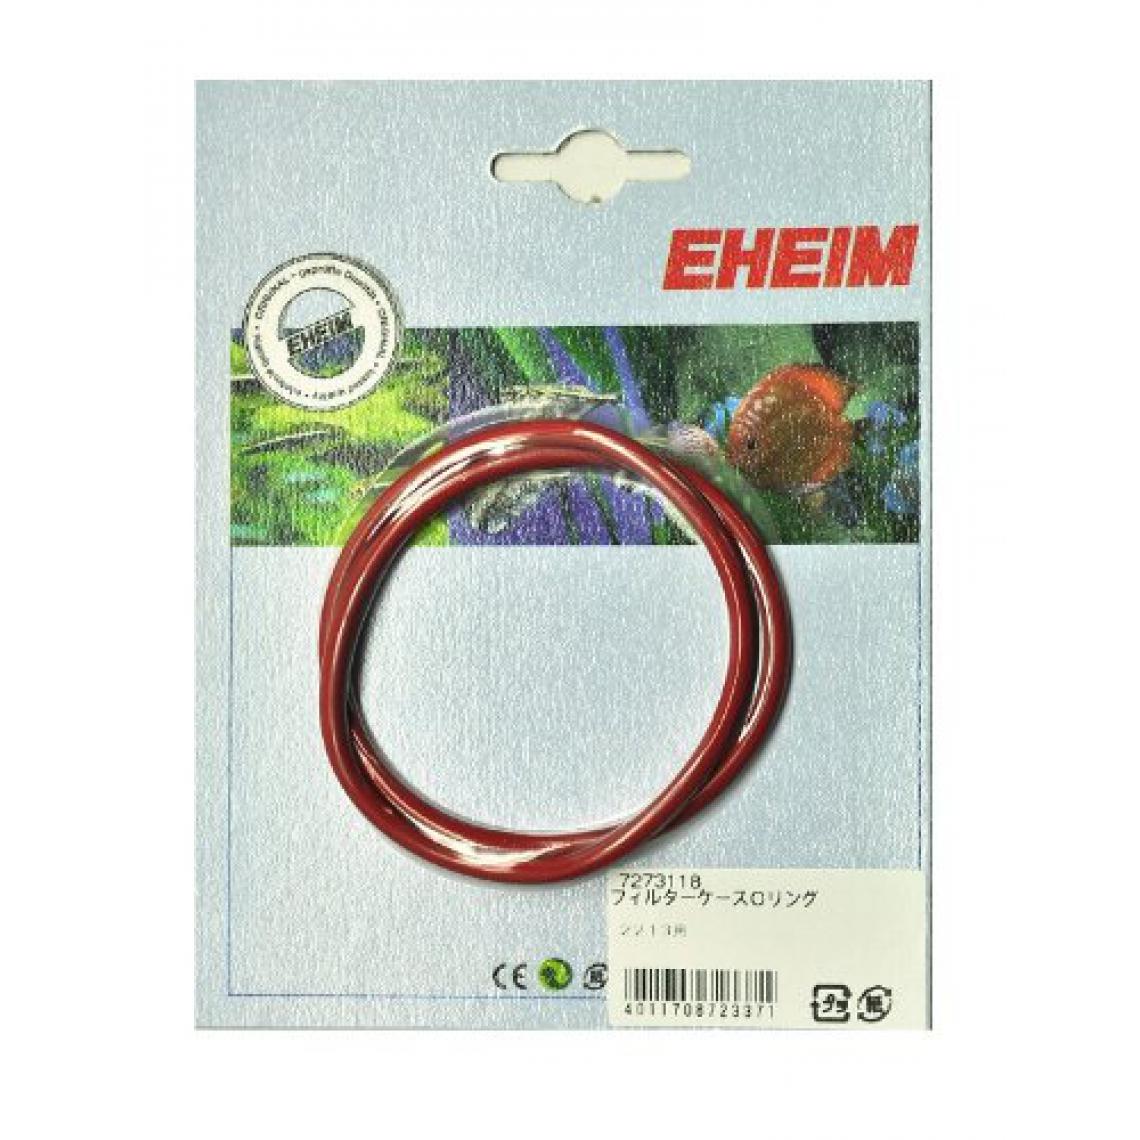 Eheim - Eheim 17273118 Pompe/Filtre pour Aquariophilie - Equipement de l'aquarium